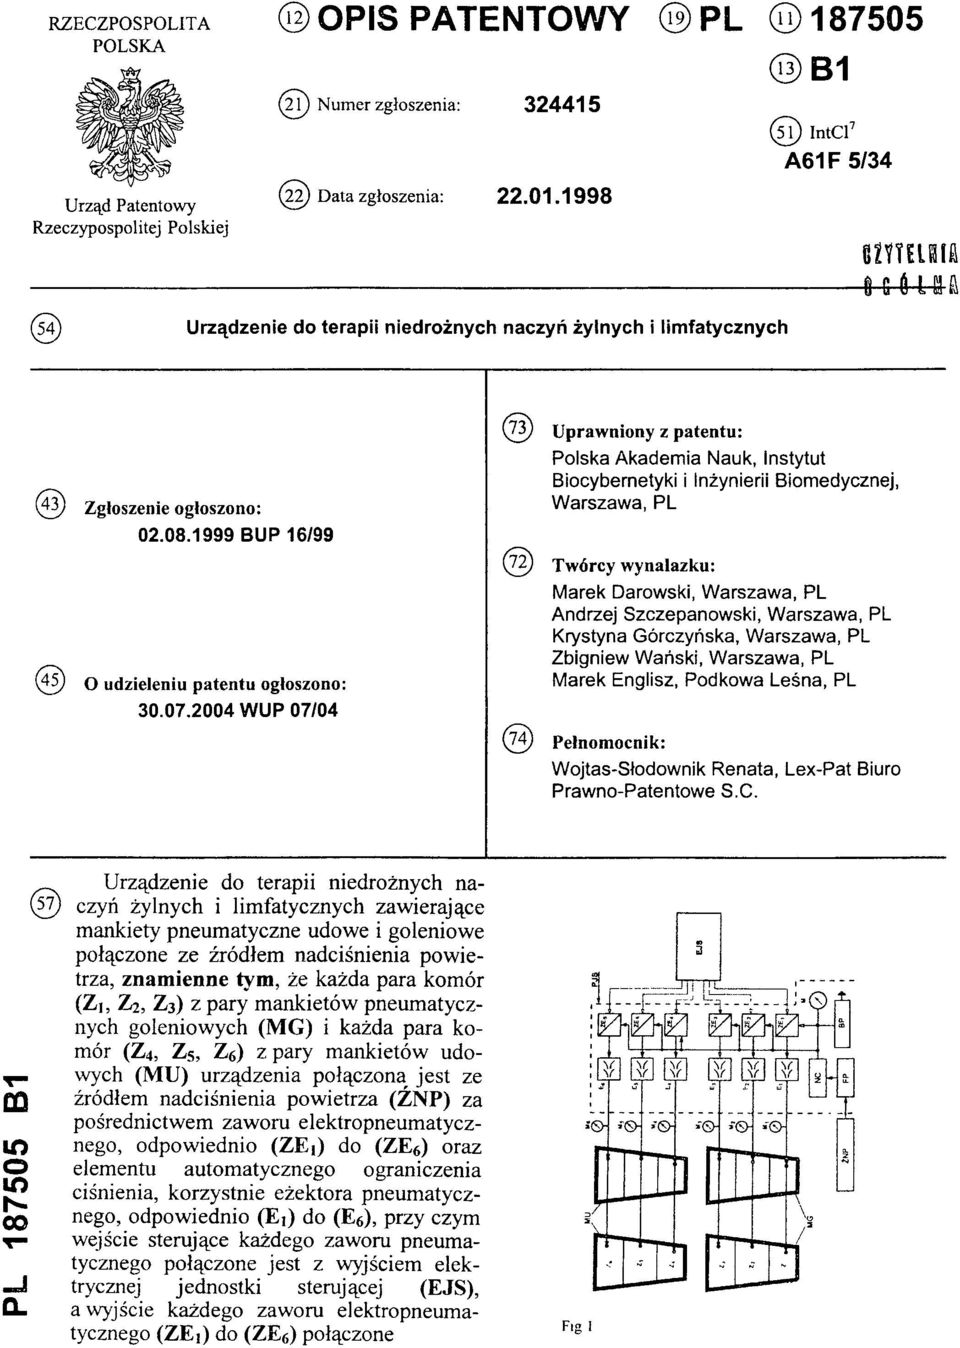 2004 WUP 07/04 ( 7 3 ) Uprawniony z patentu: Polska Akademia Nauk, instytut Biocybernetyki i Inżynierii Biomedycznej, Warszawa, PL ( 7 2 ) Twórcy wynalazku: Marek Darowski, Warszawa, PL Andrzej